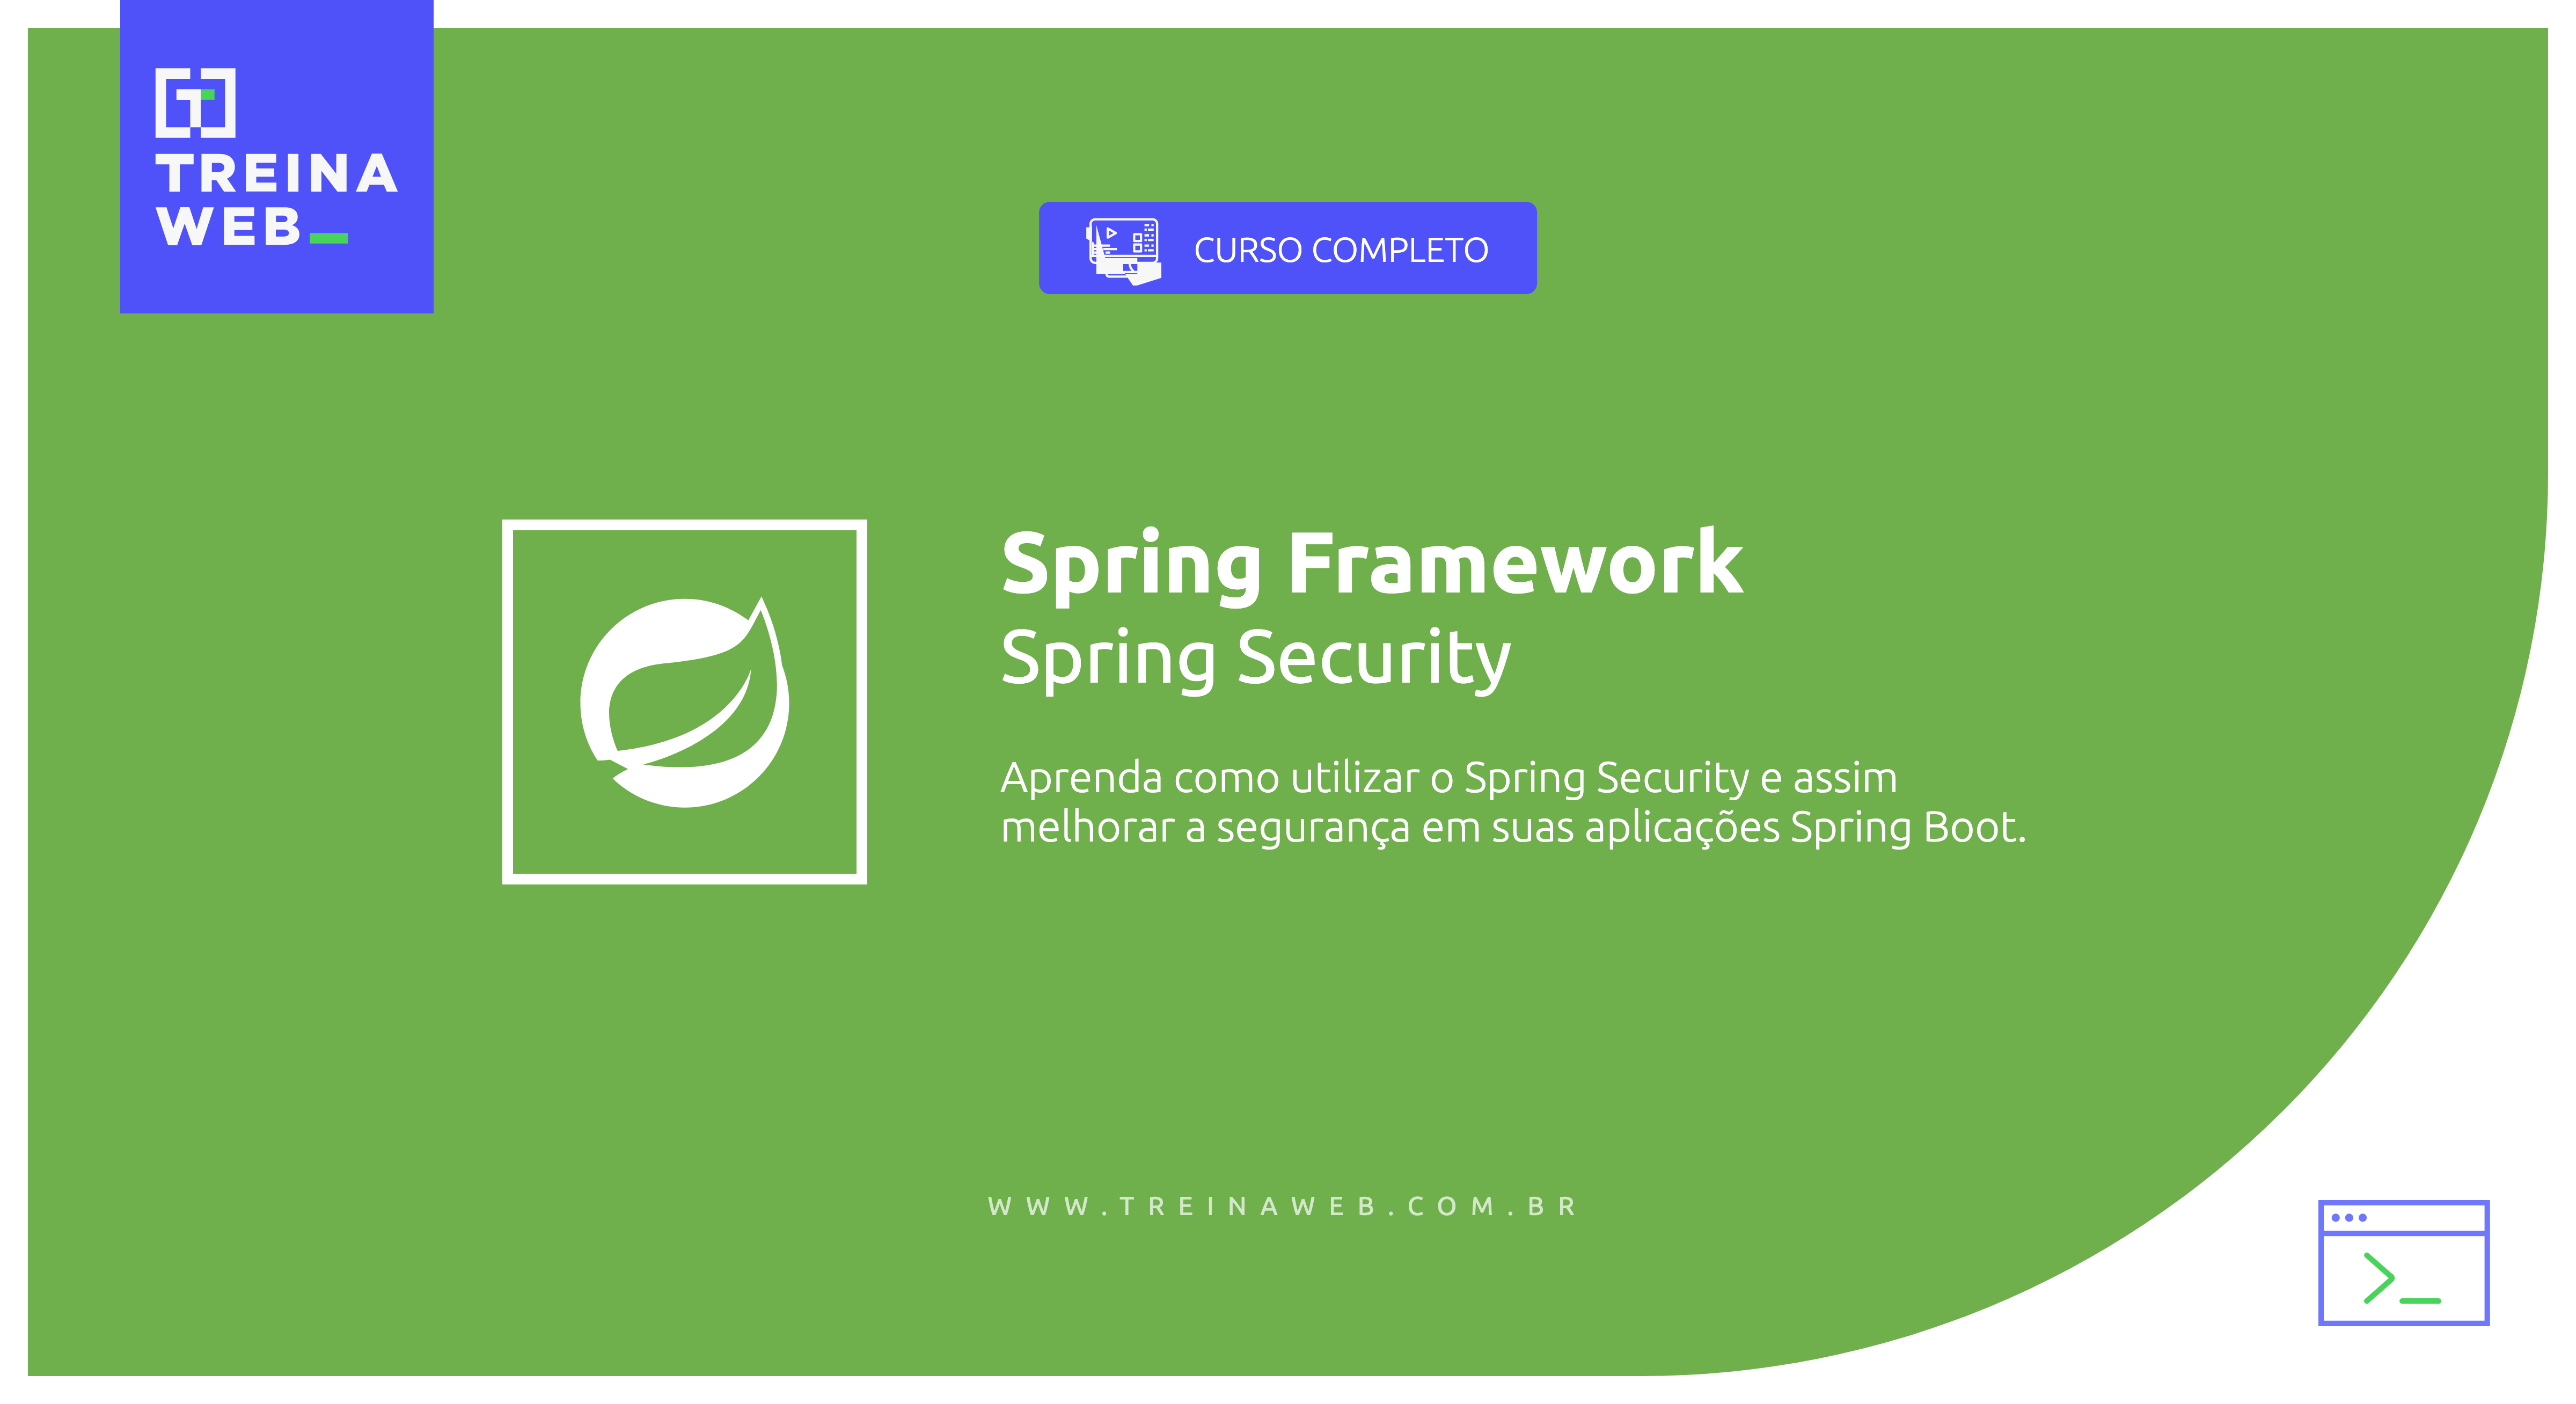 Imagem ilustrativa do curso Spring Framework - Spring Security